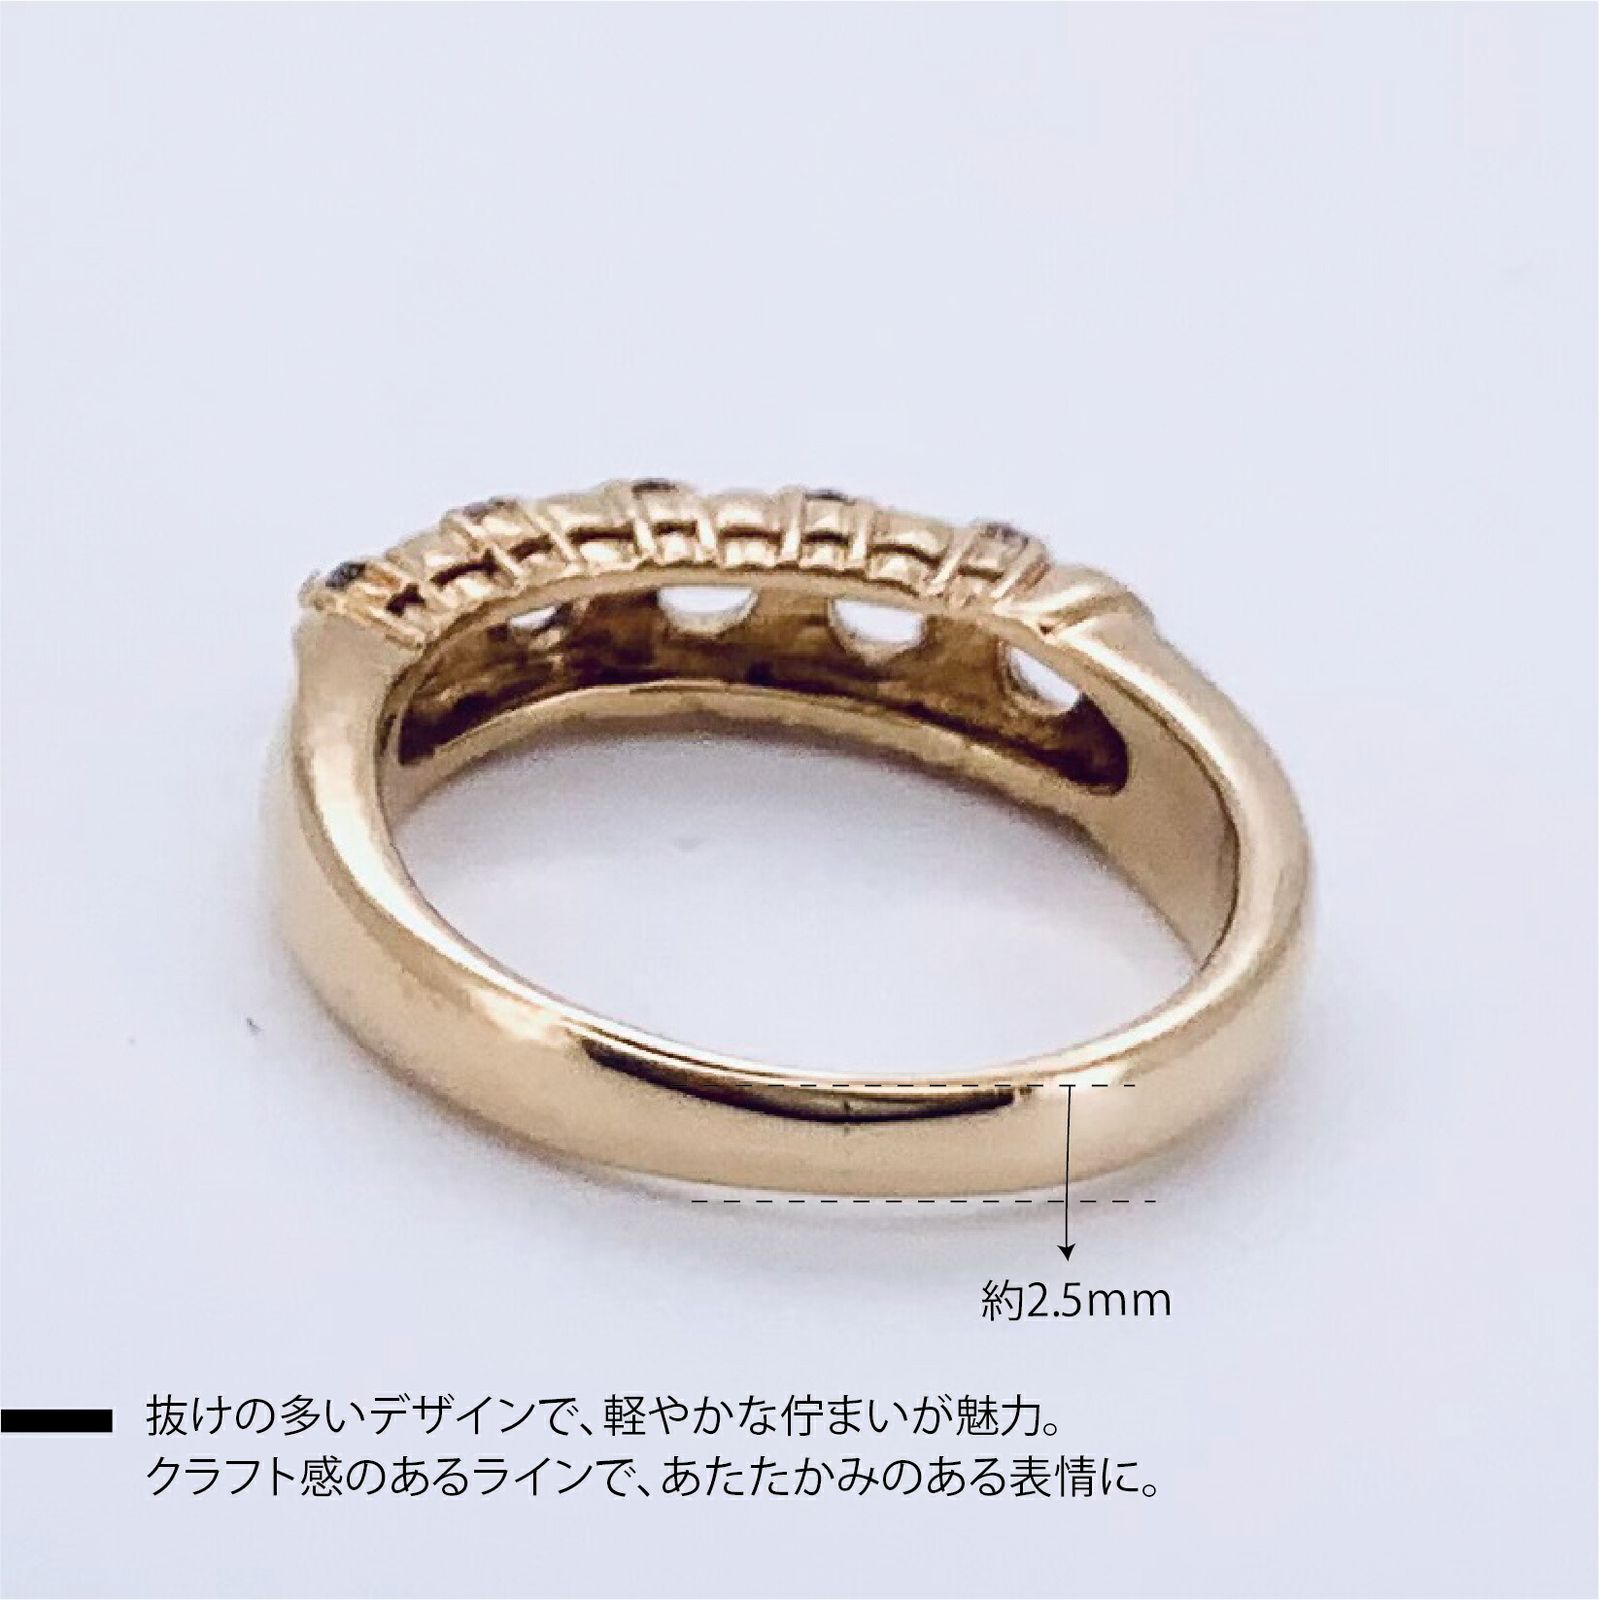 【新品仕上げ】K18 ゴールド K18金 ダイヤモンド0.05ct リング デザイン 指輪10号 ±4までサイズ直し無料 コンディションSランク  新品仕上げ済みの商品4月誕生石